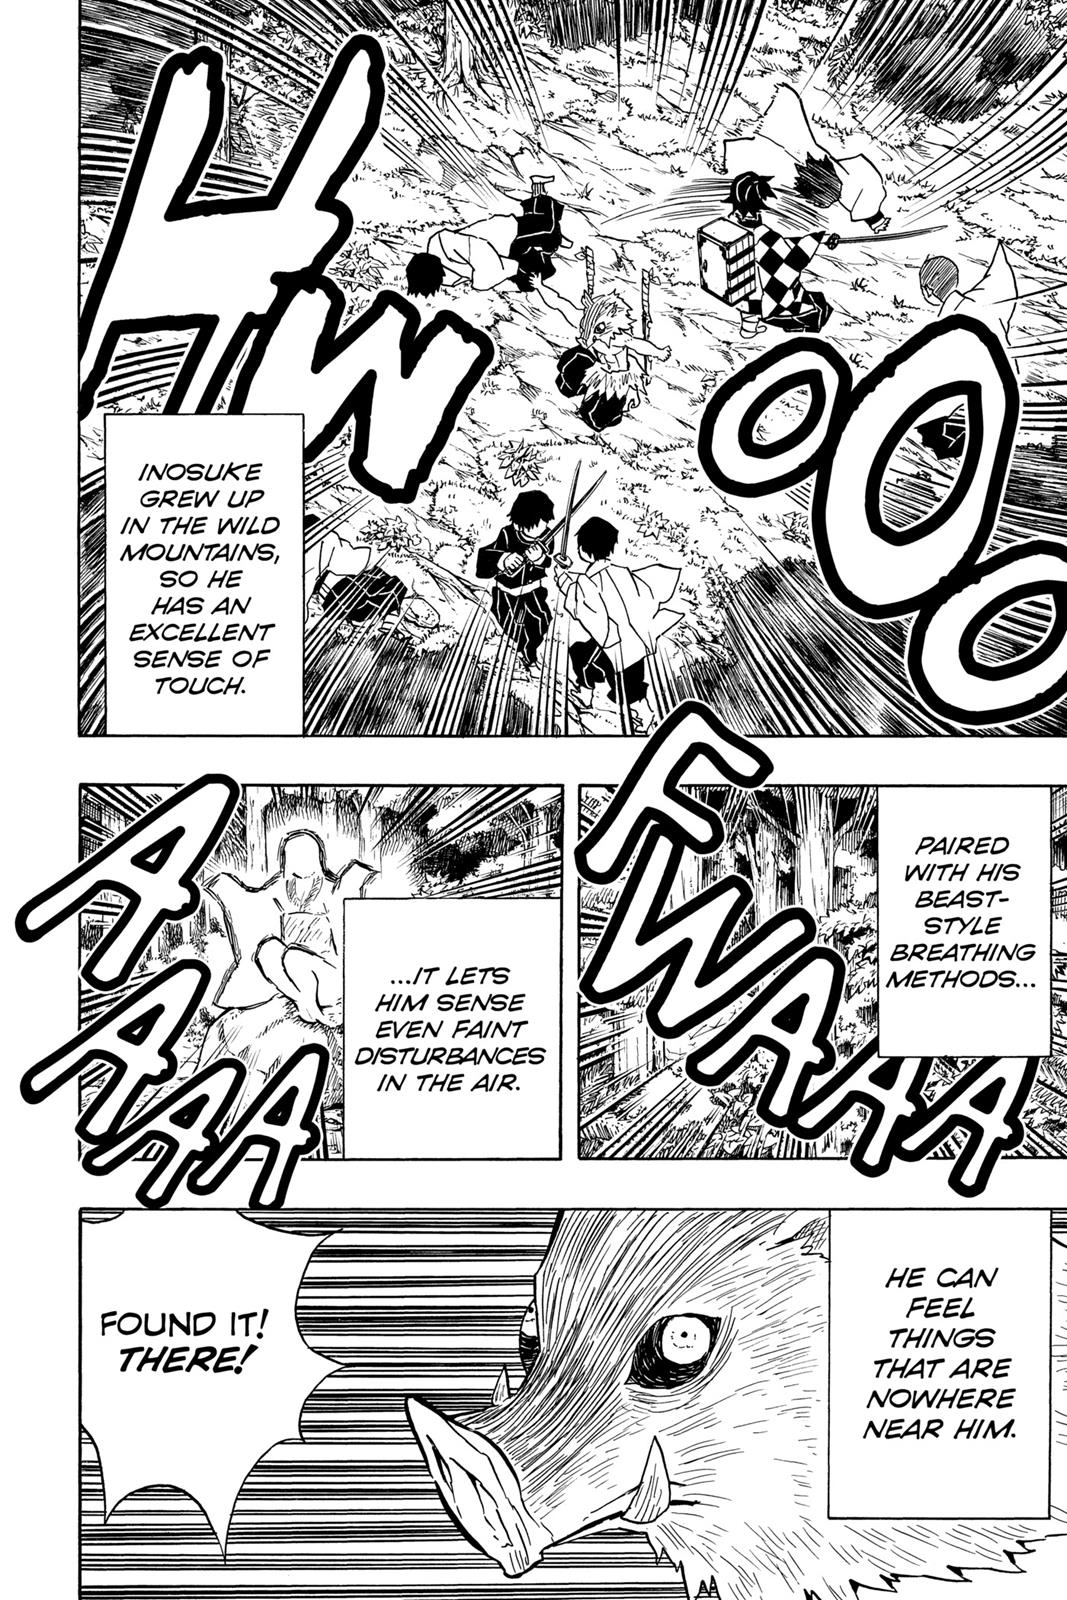 Demon Slayer Manga Manga Chapter - 29 - image 10